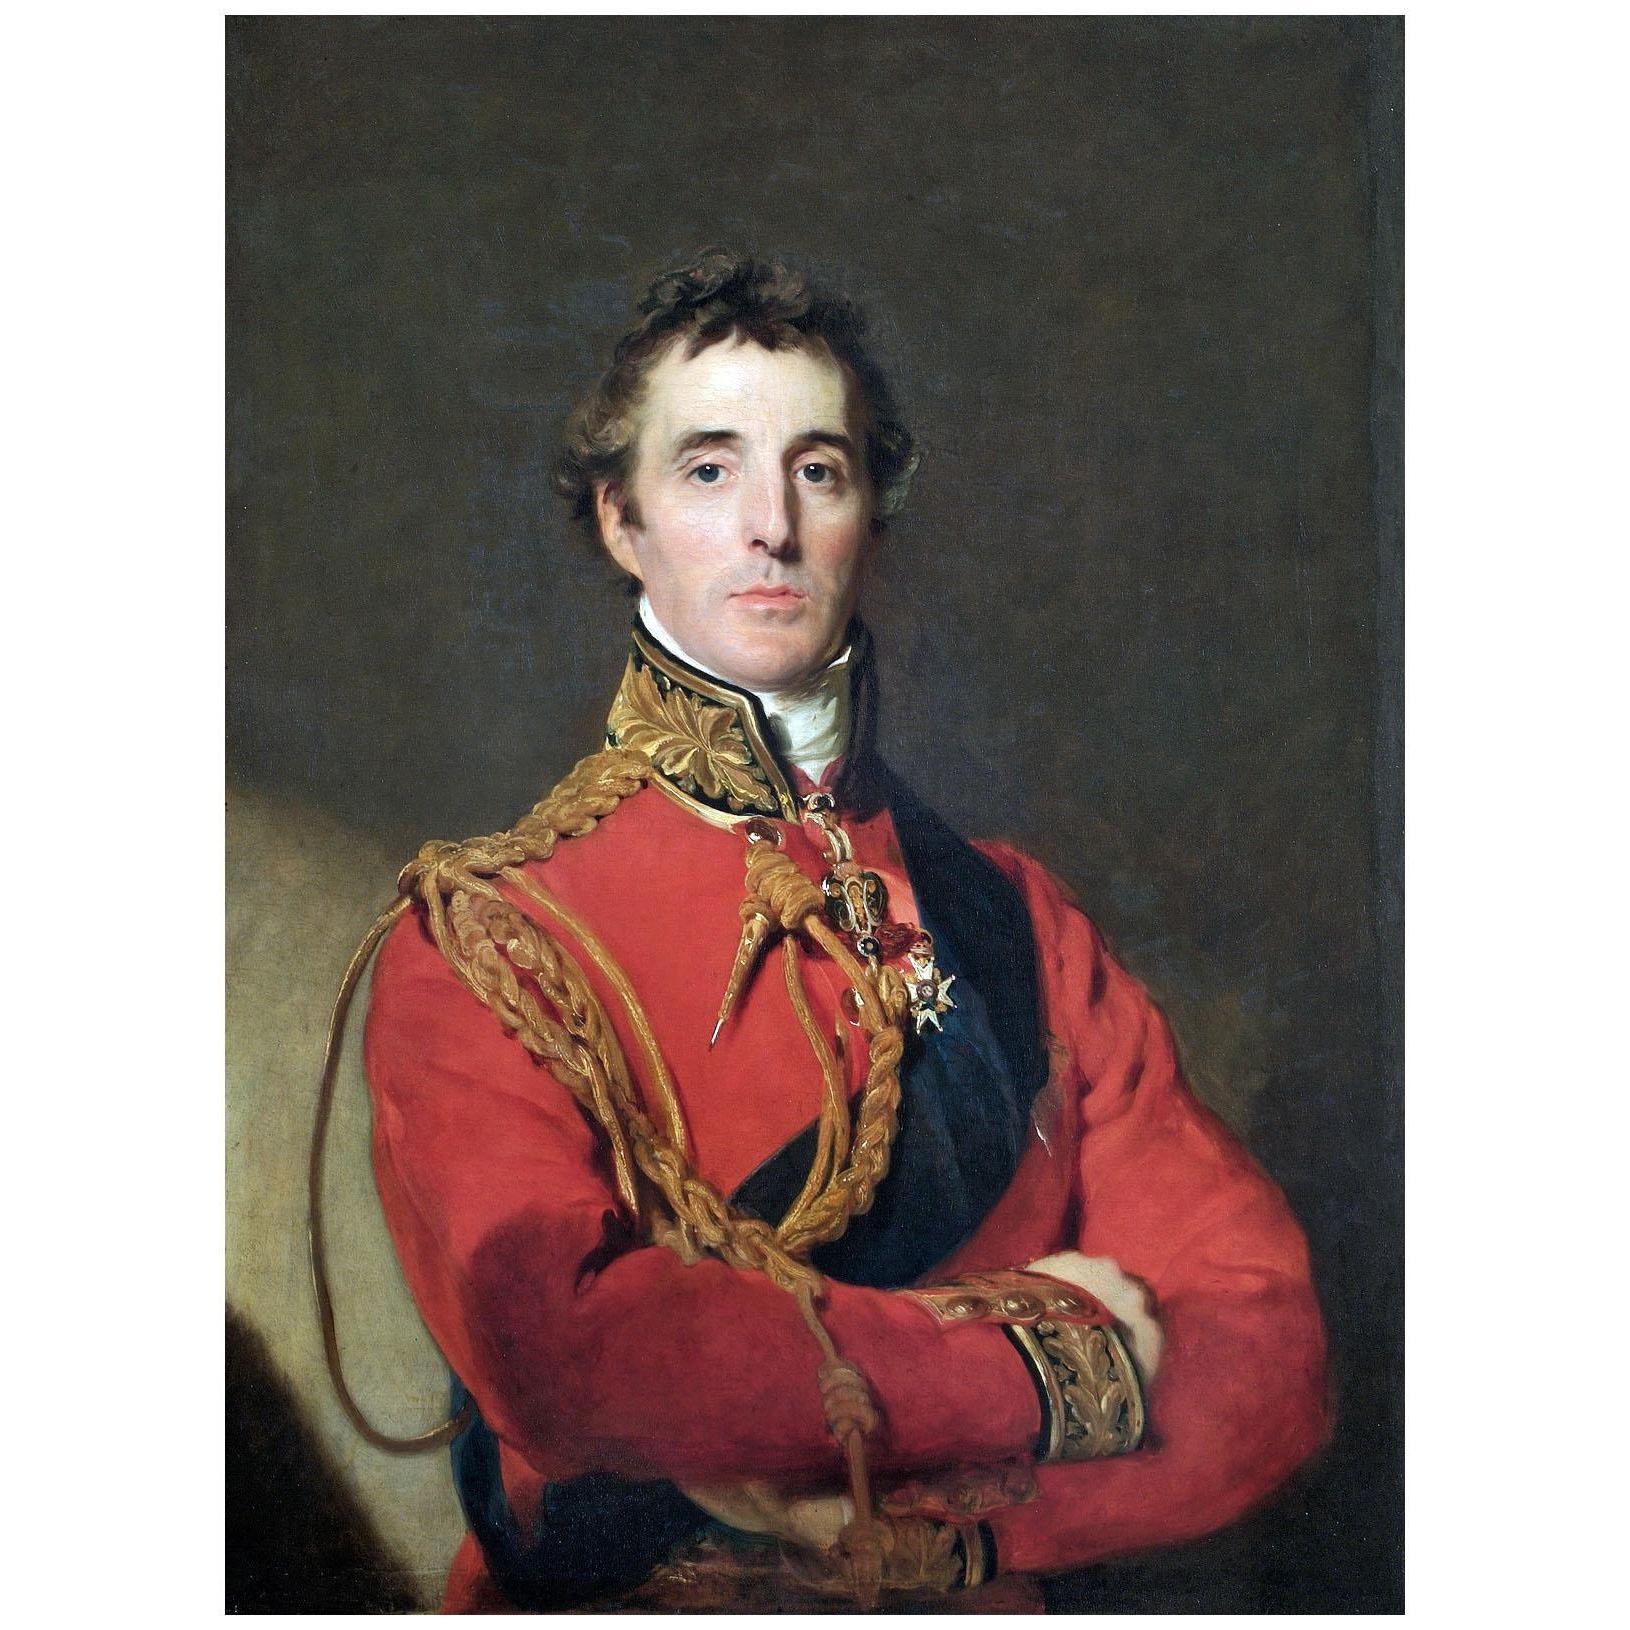 Thomas Lawrence. Duke of Wellington. 1815. Apsley House London